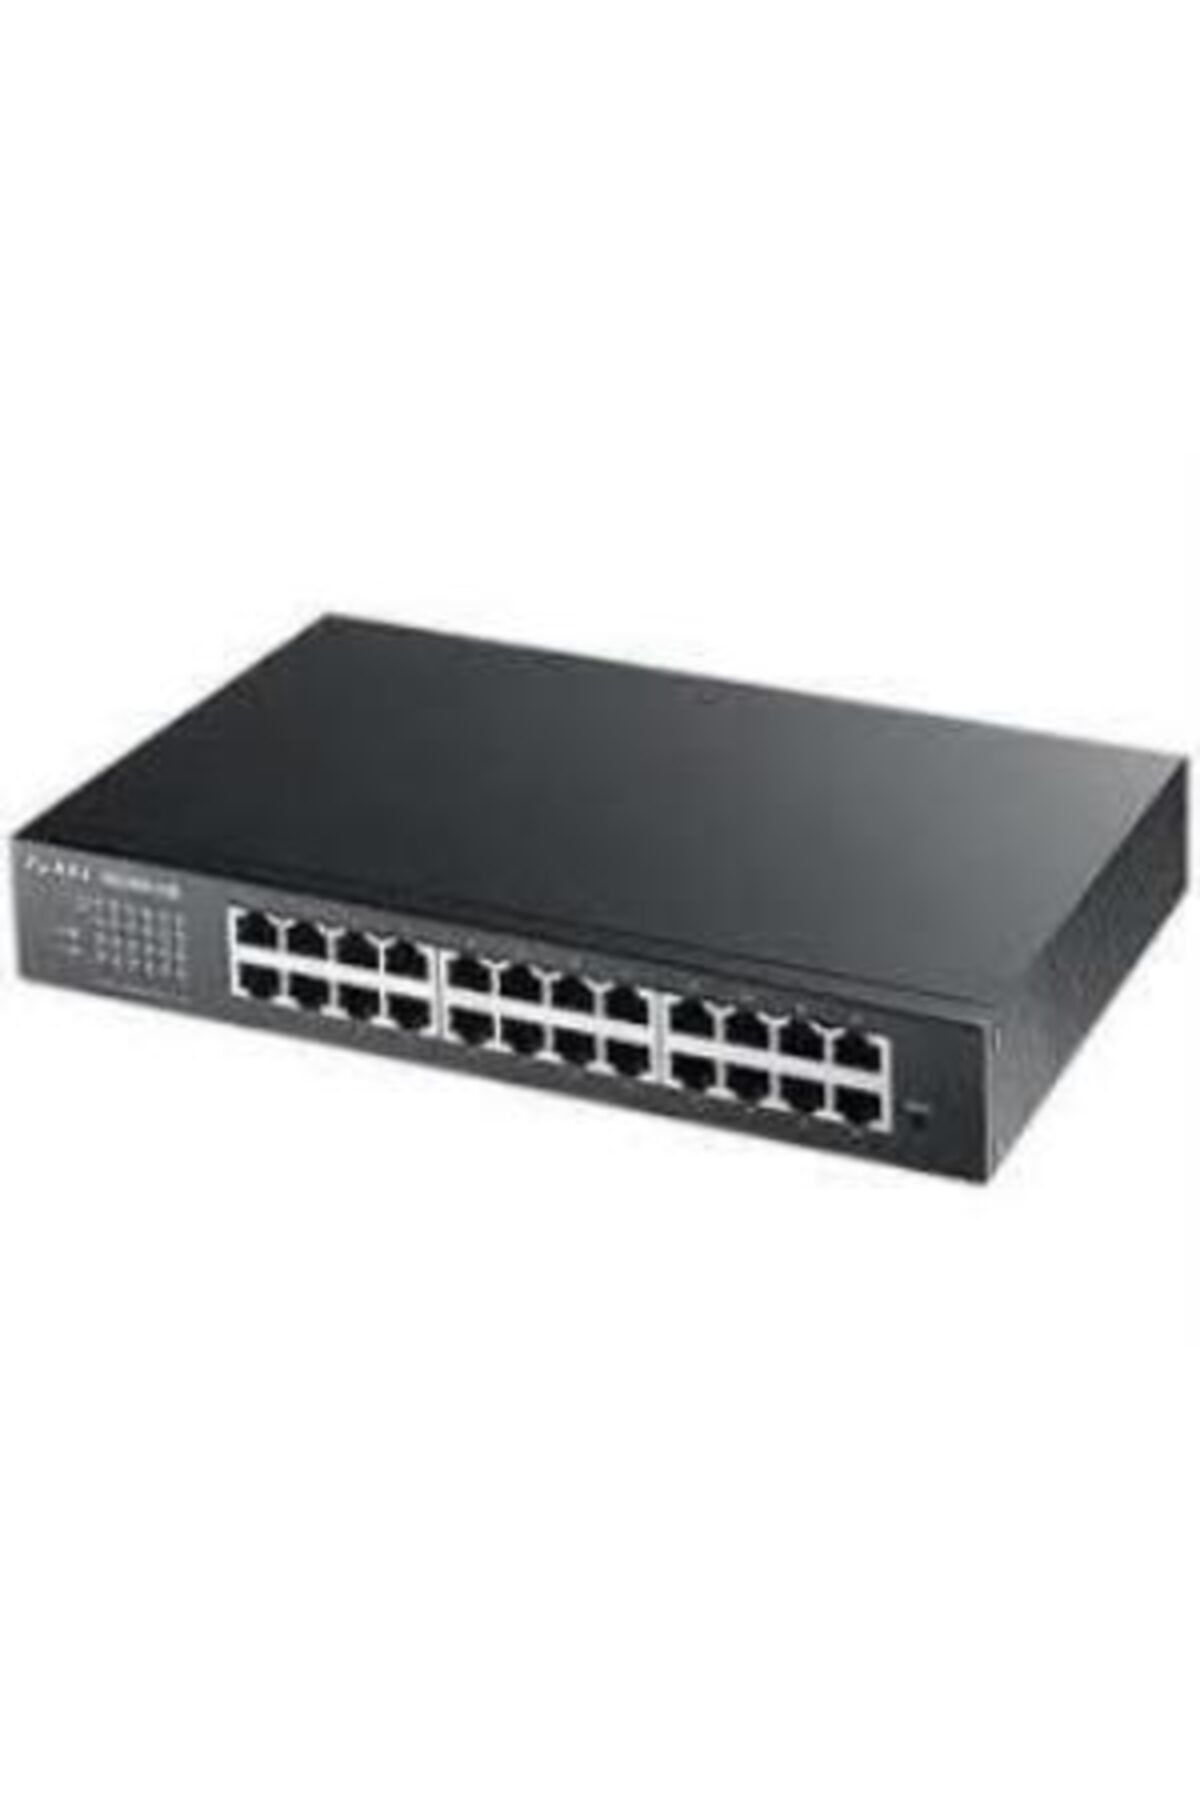 Zyxel Gs1100-24e 24 Port 10-100-1000 Mbps Switch